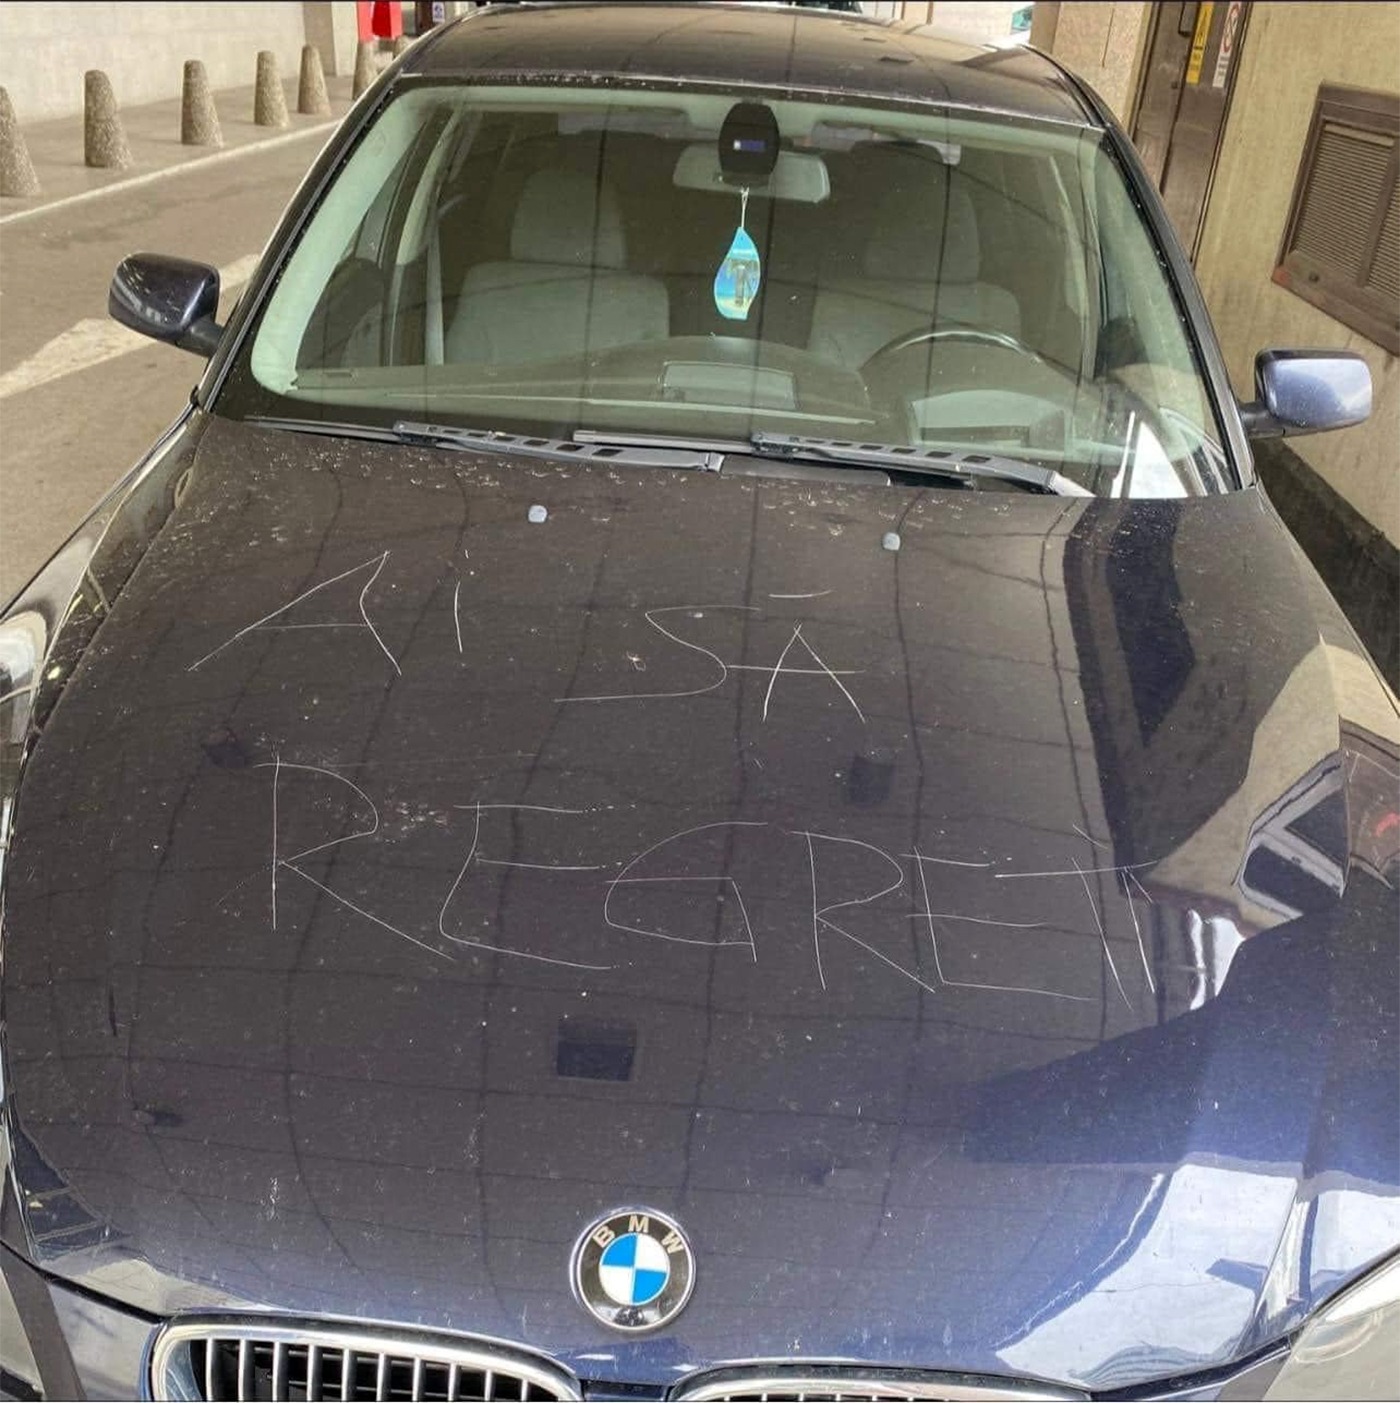 Ce mesaj a primit un șofer din Iași, zgâriat pe capota BMW-ului său: "Ai să.."